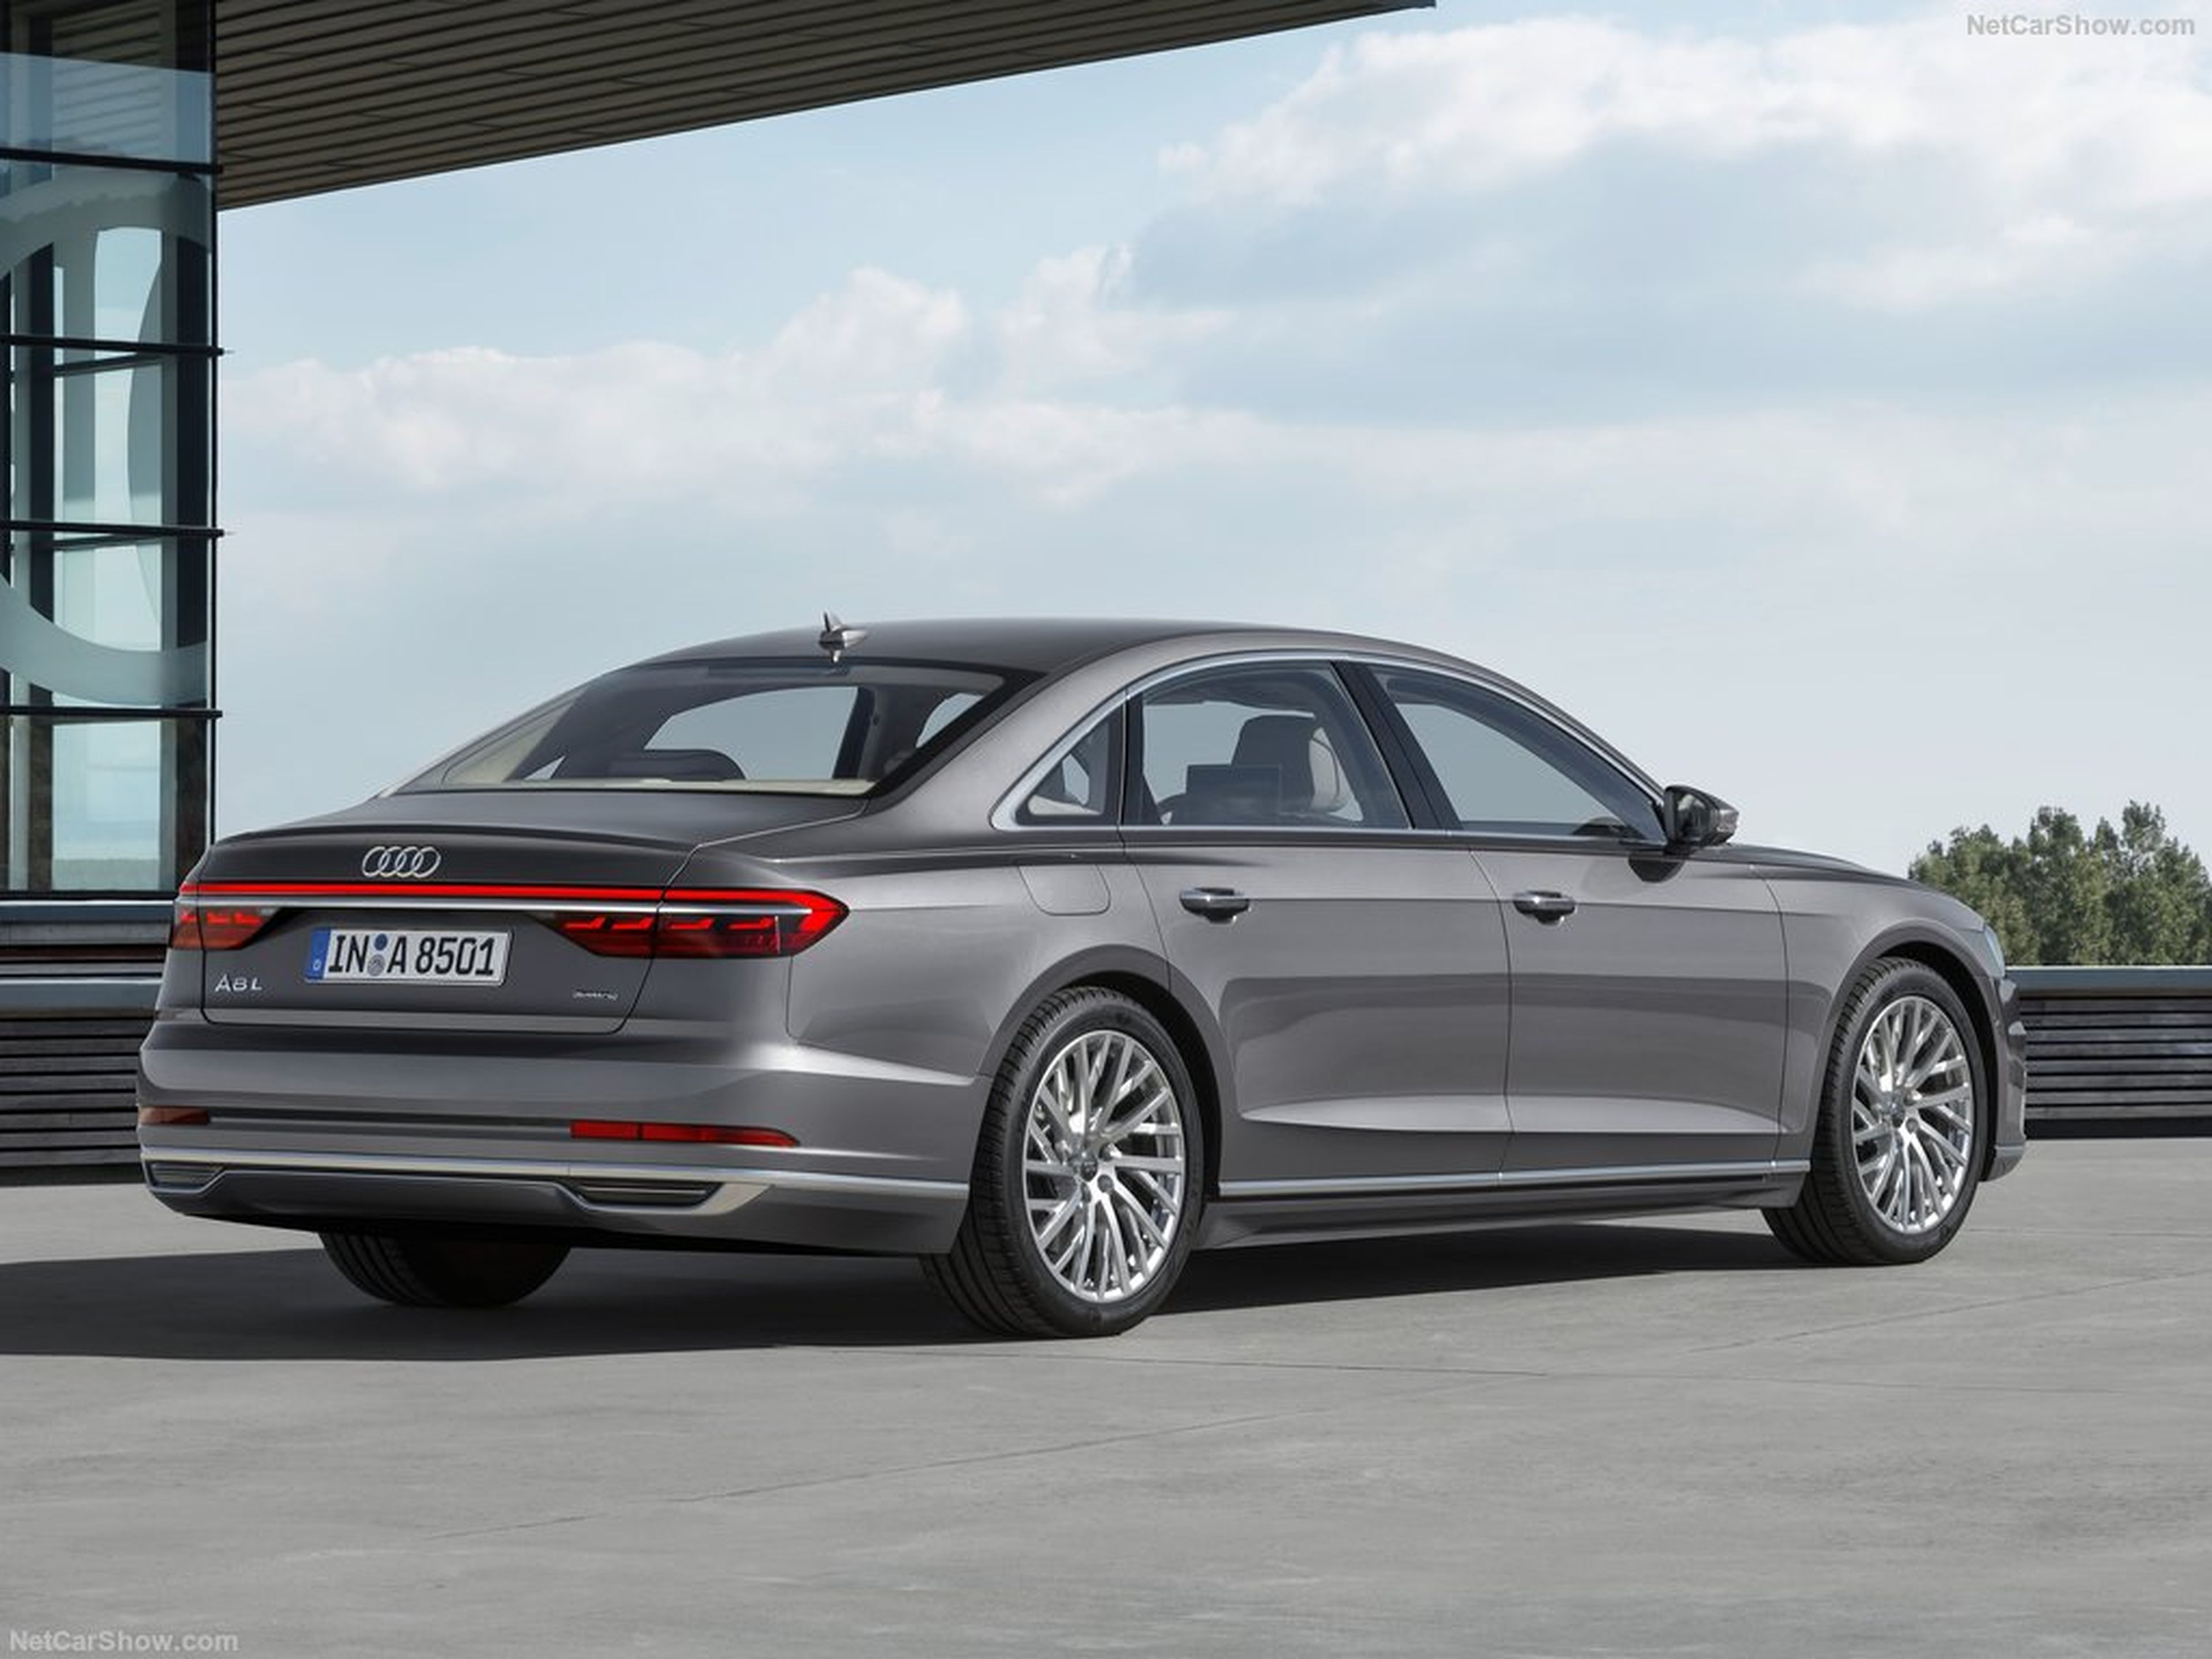 VÍDEO: El nuevo coche oficial del Gobierno, un Audi A8 L Security